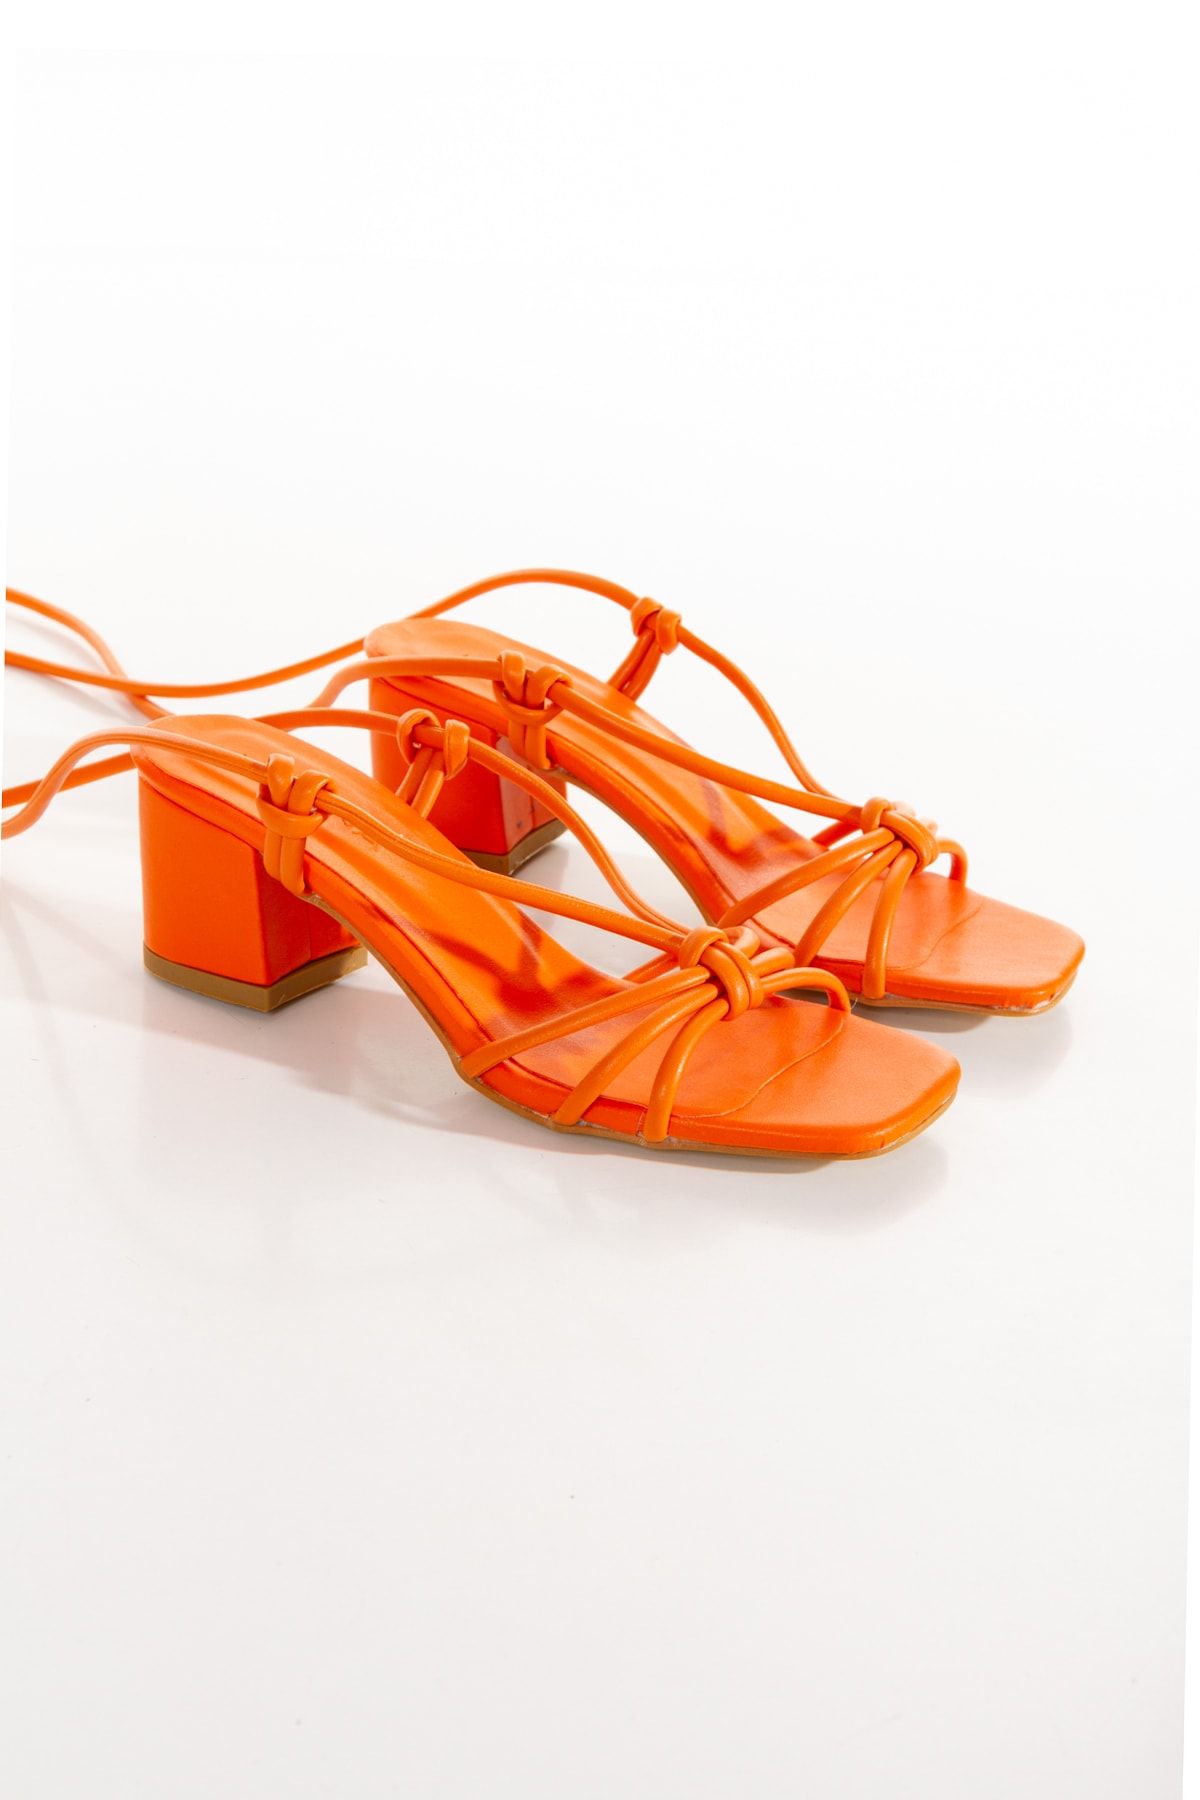 irmona Kleopatra Orange Turuncu Ipli Bağlamalı Topuklu Kısa Ökçe Terlik Sandalet